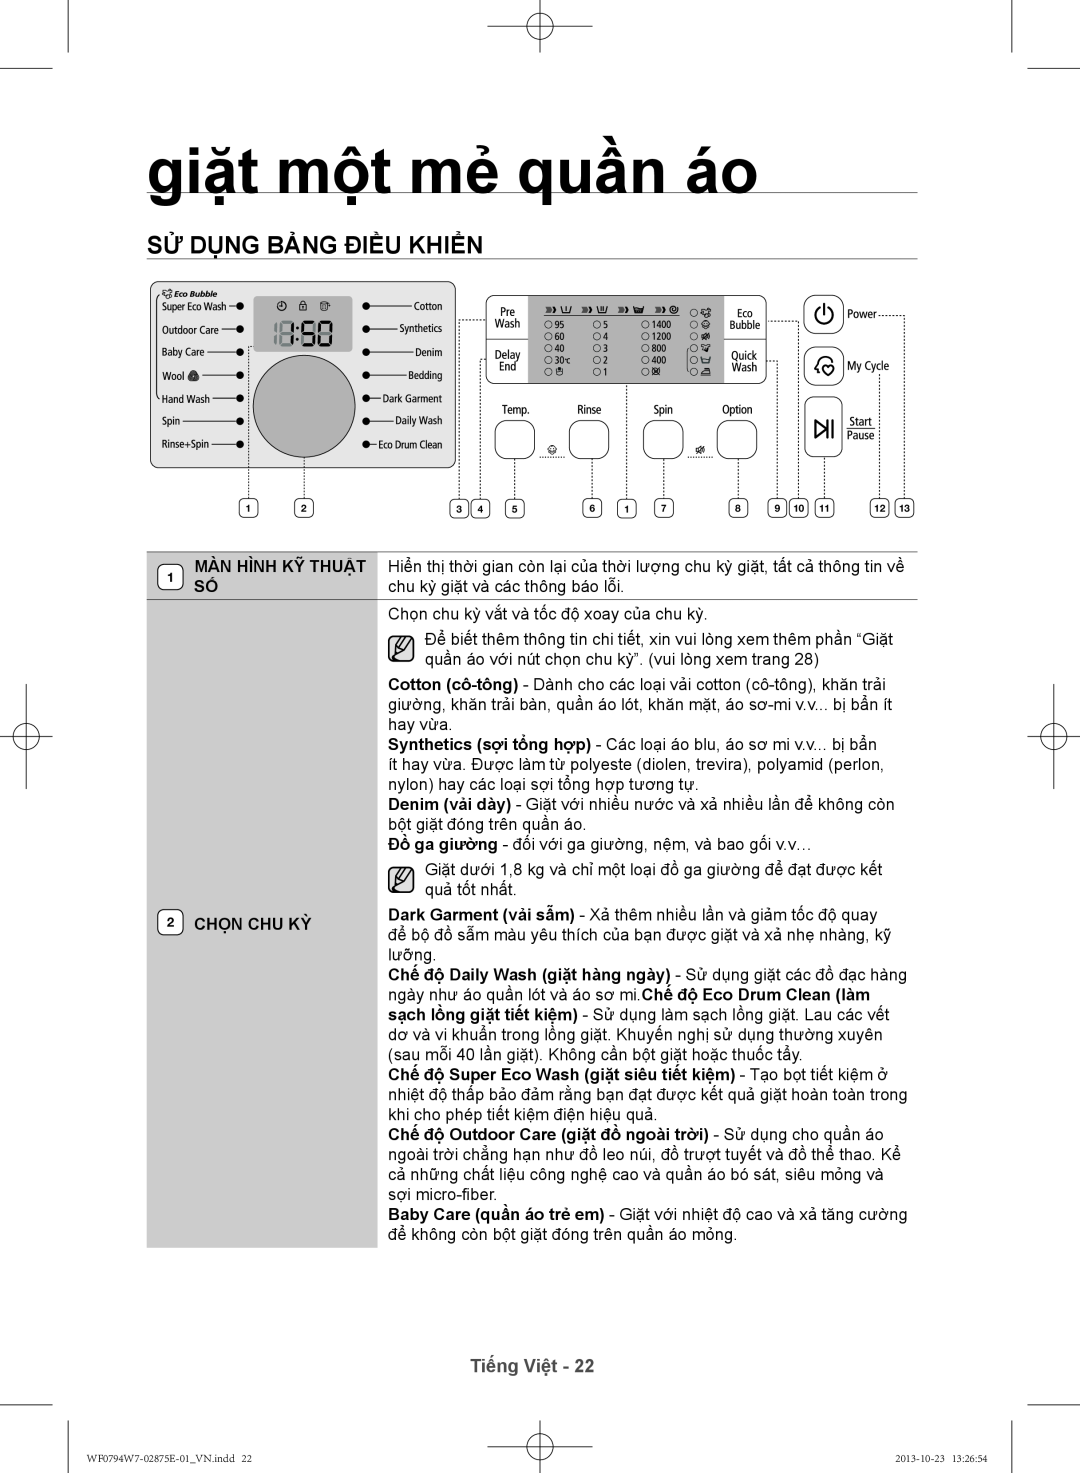 Samsung WF0794W7E9/XSV manual giặt mộ̣t mẻ quần áo, Sử dụng bảng điều khiển, Tiếng Việt, Chọn Chu Kỳ 